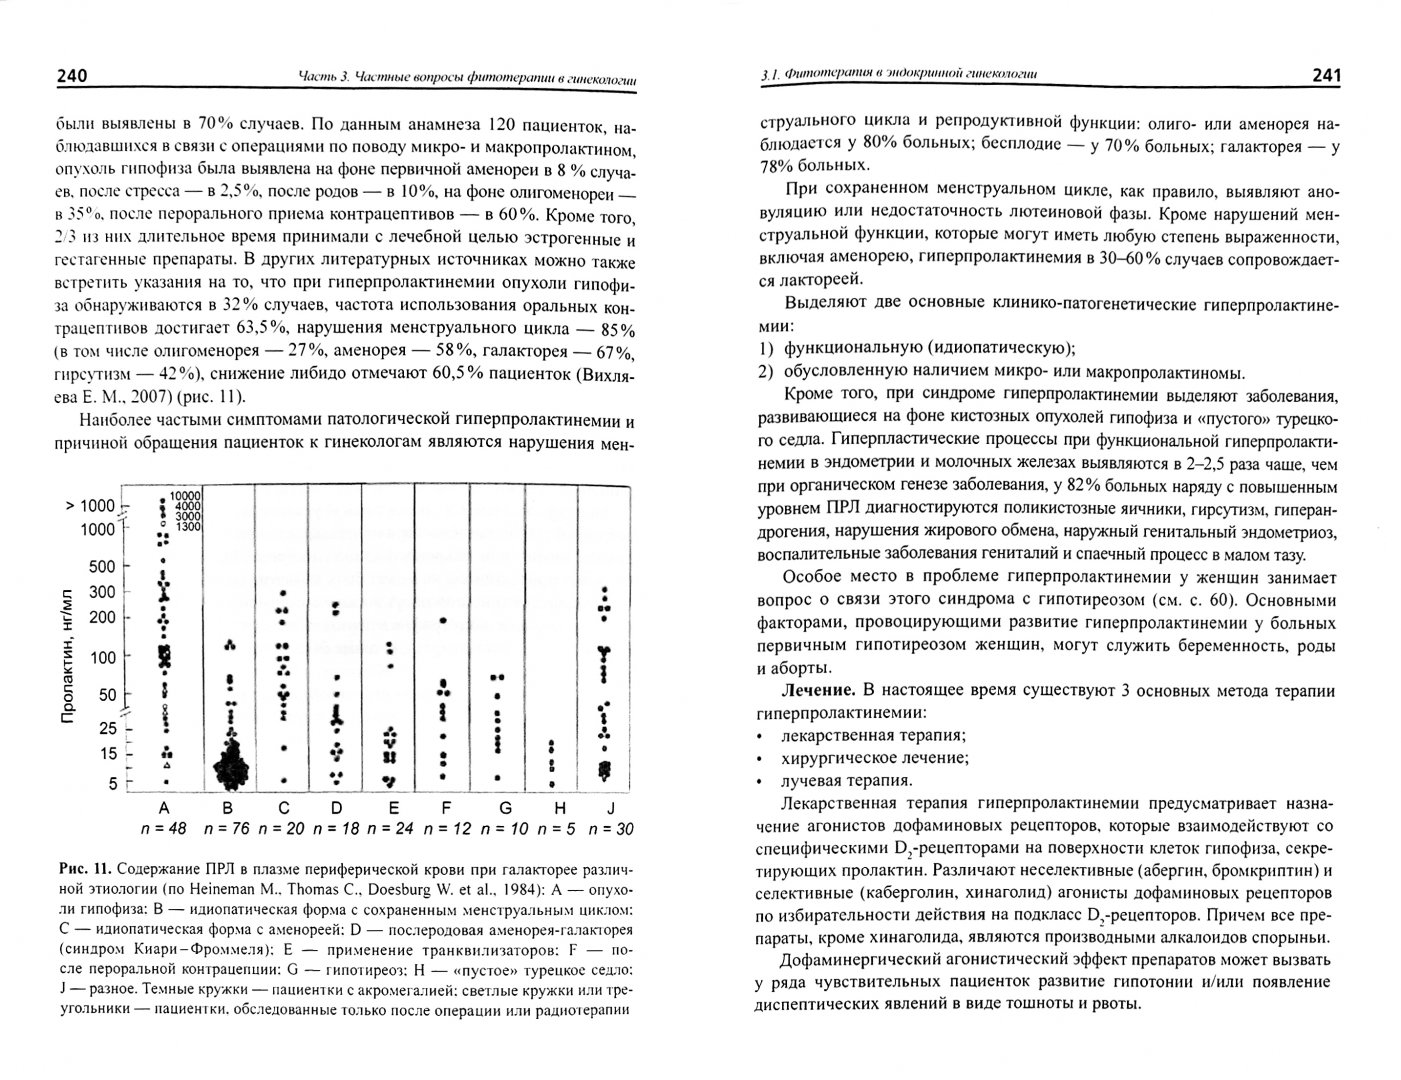 Иллюстрация 1 из 11 для Лекарственные растения в гинекологии - Корсун, Алефиров, Корсун, Косован | Лабиринт - книги. Источник: Лабиринт